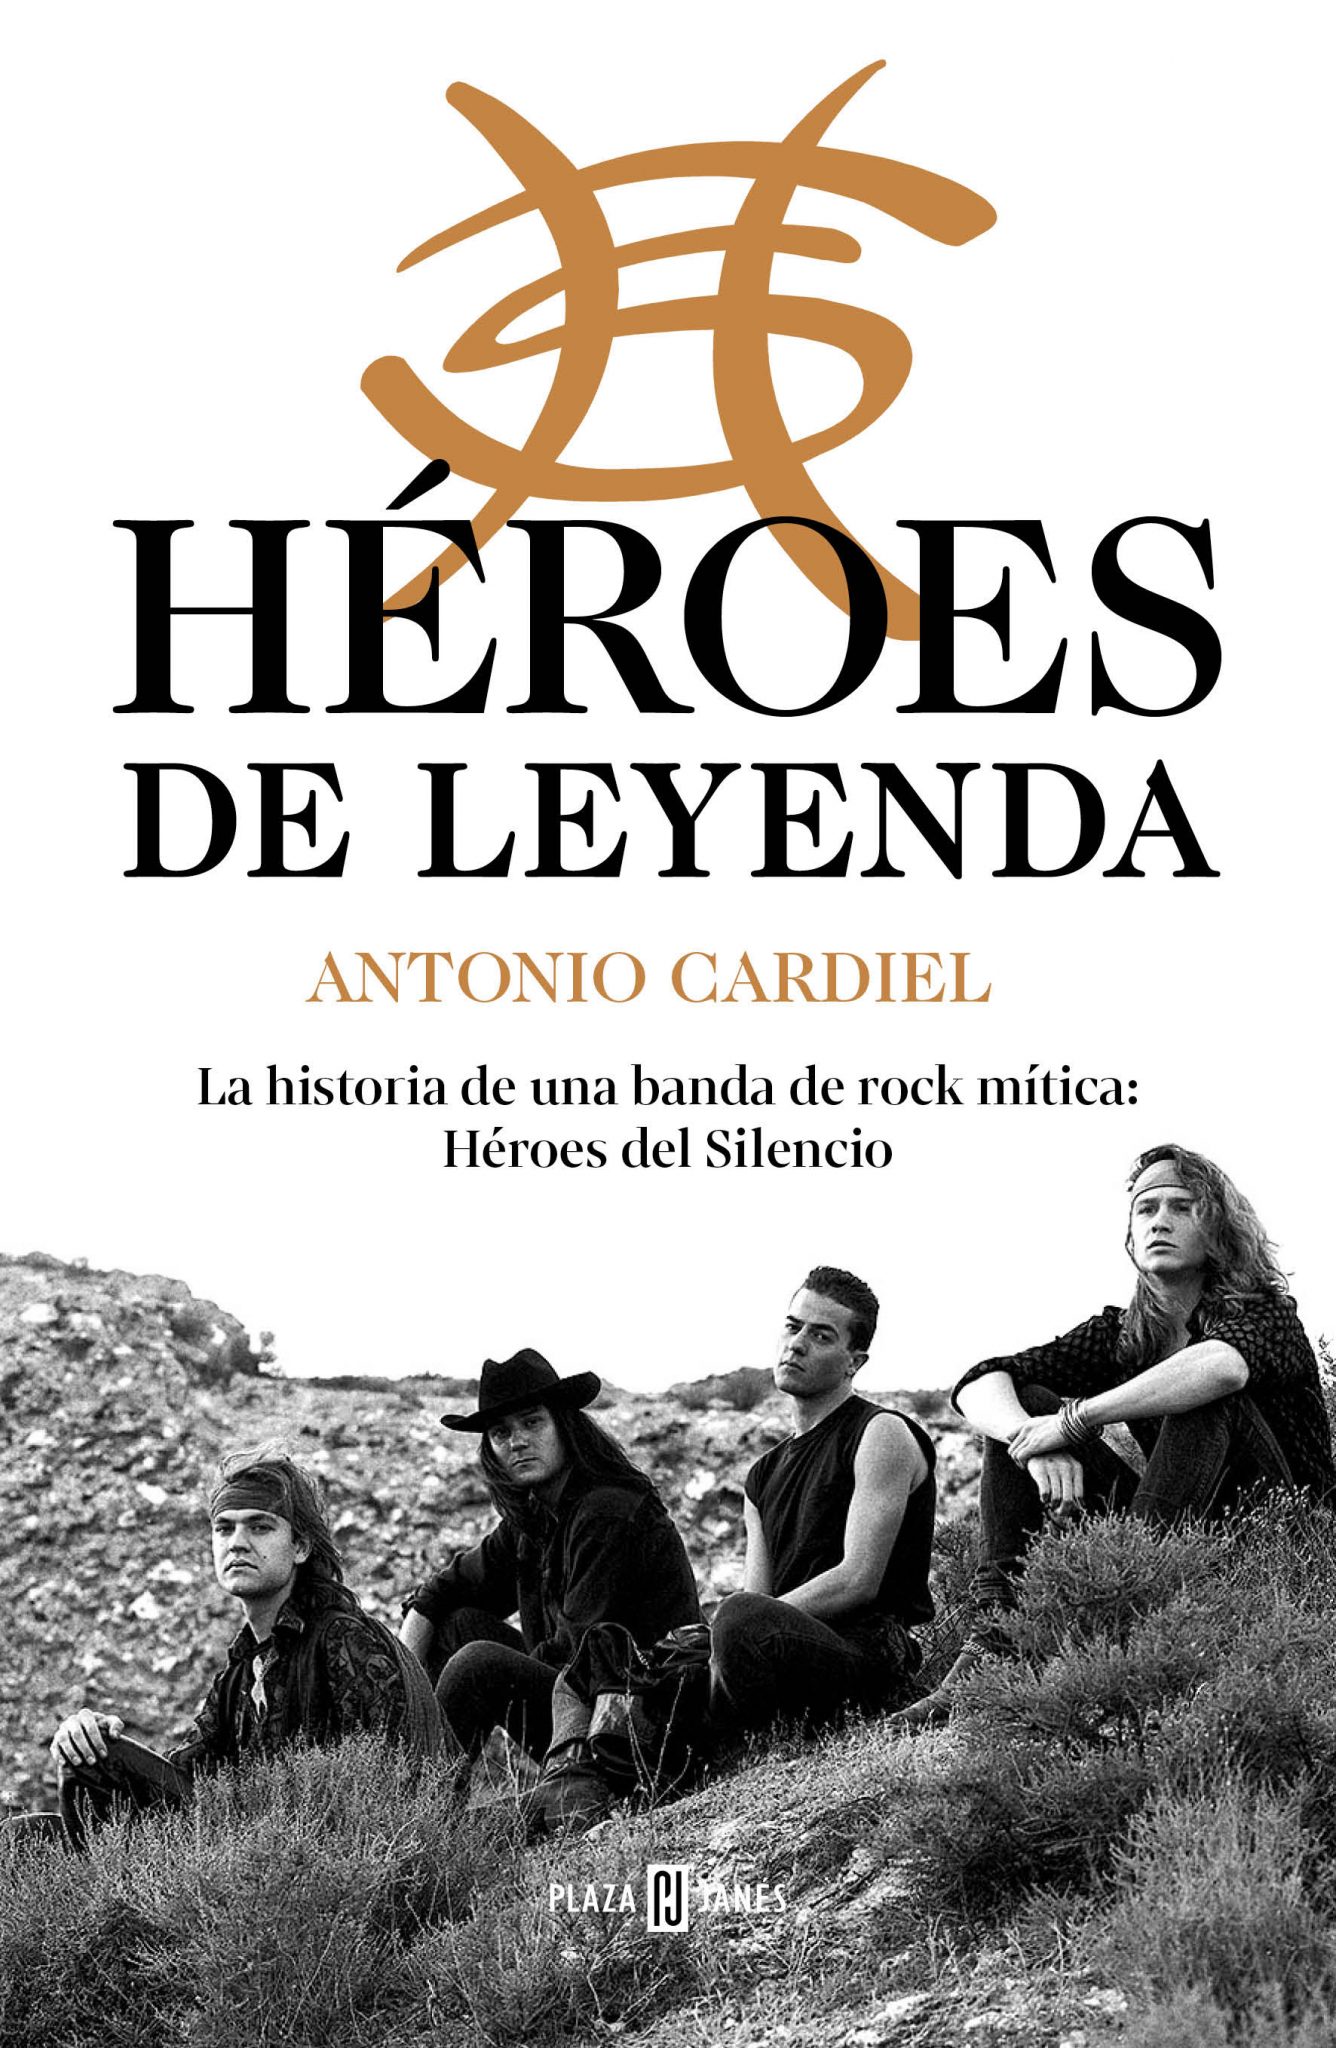 Héroes de leyenda – Antonio Cardiel (Penguin Random House)